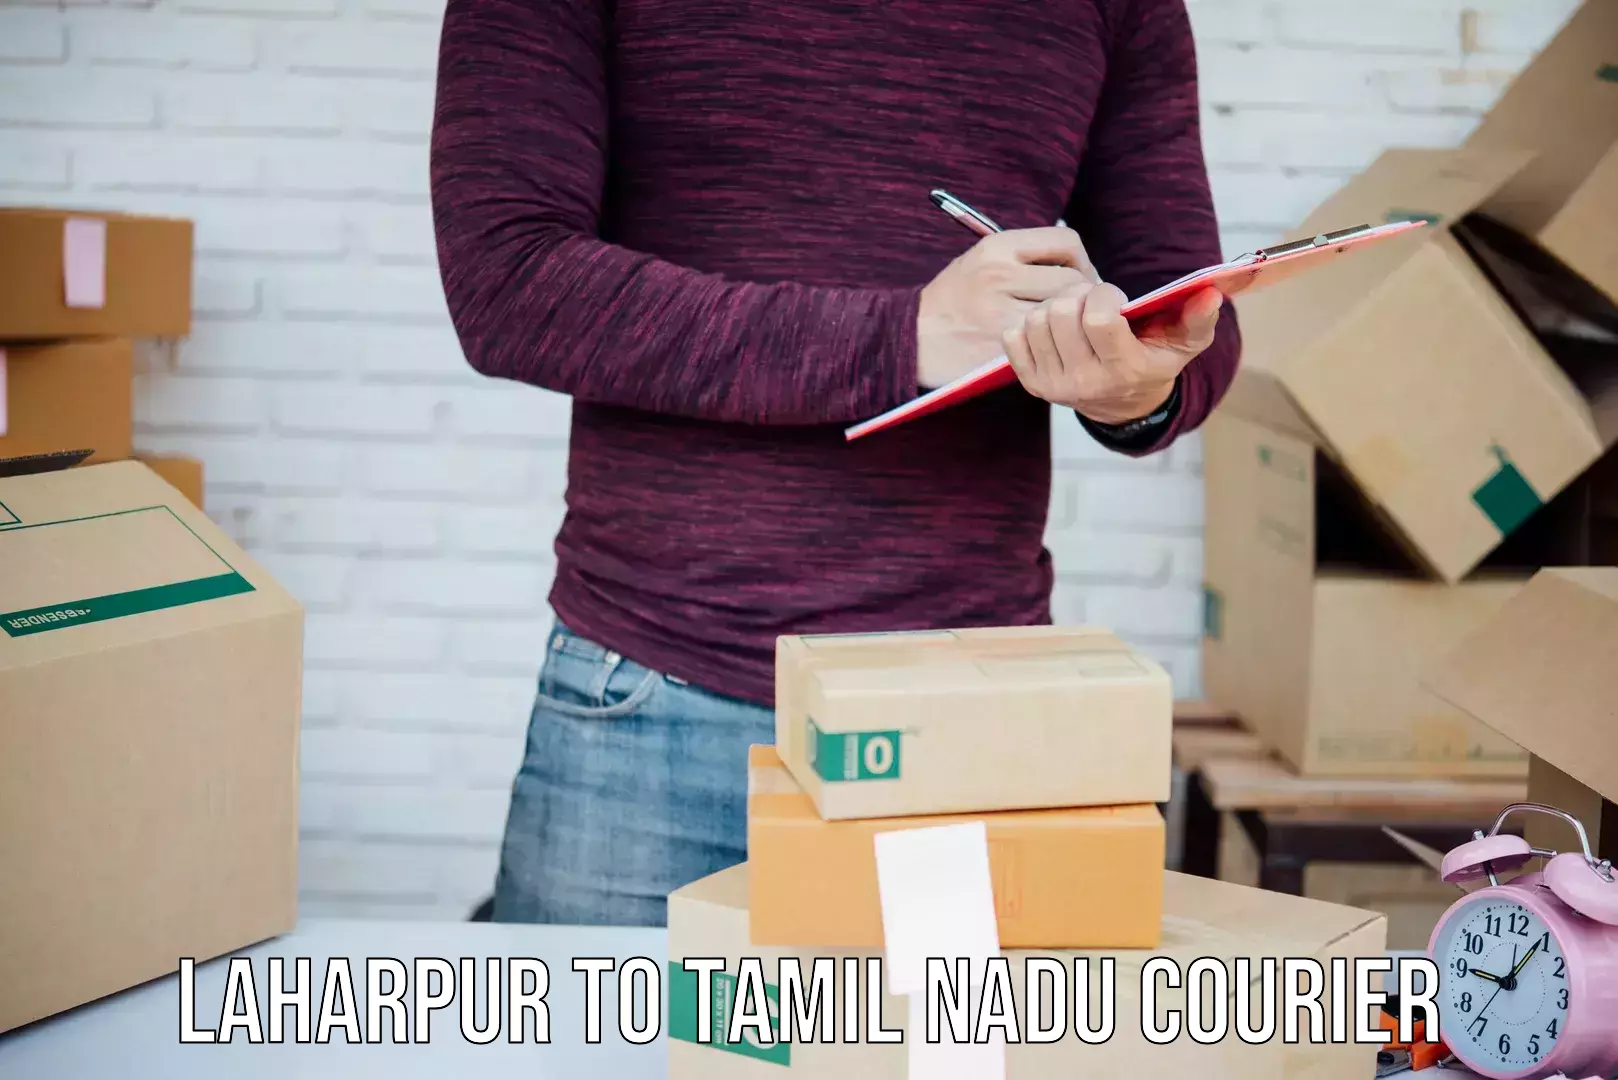 Multi-service courier options Laharpur to Ramanathapuram